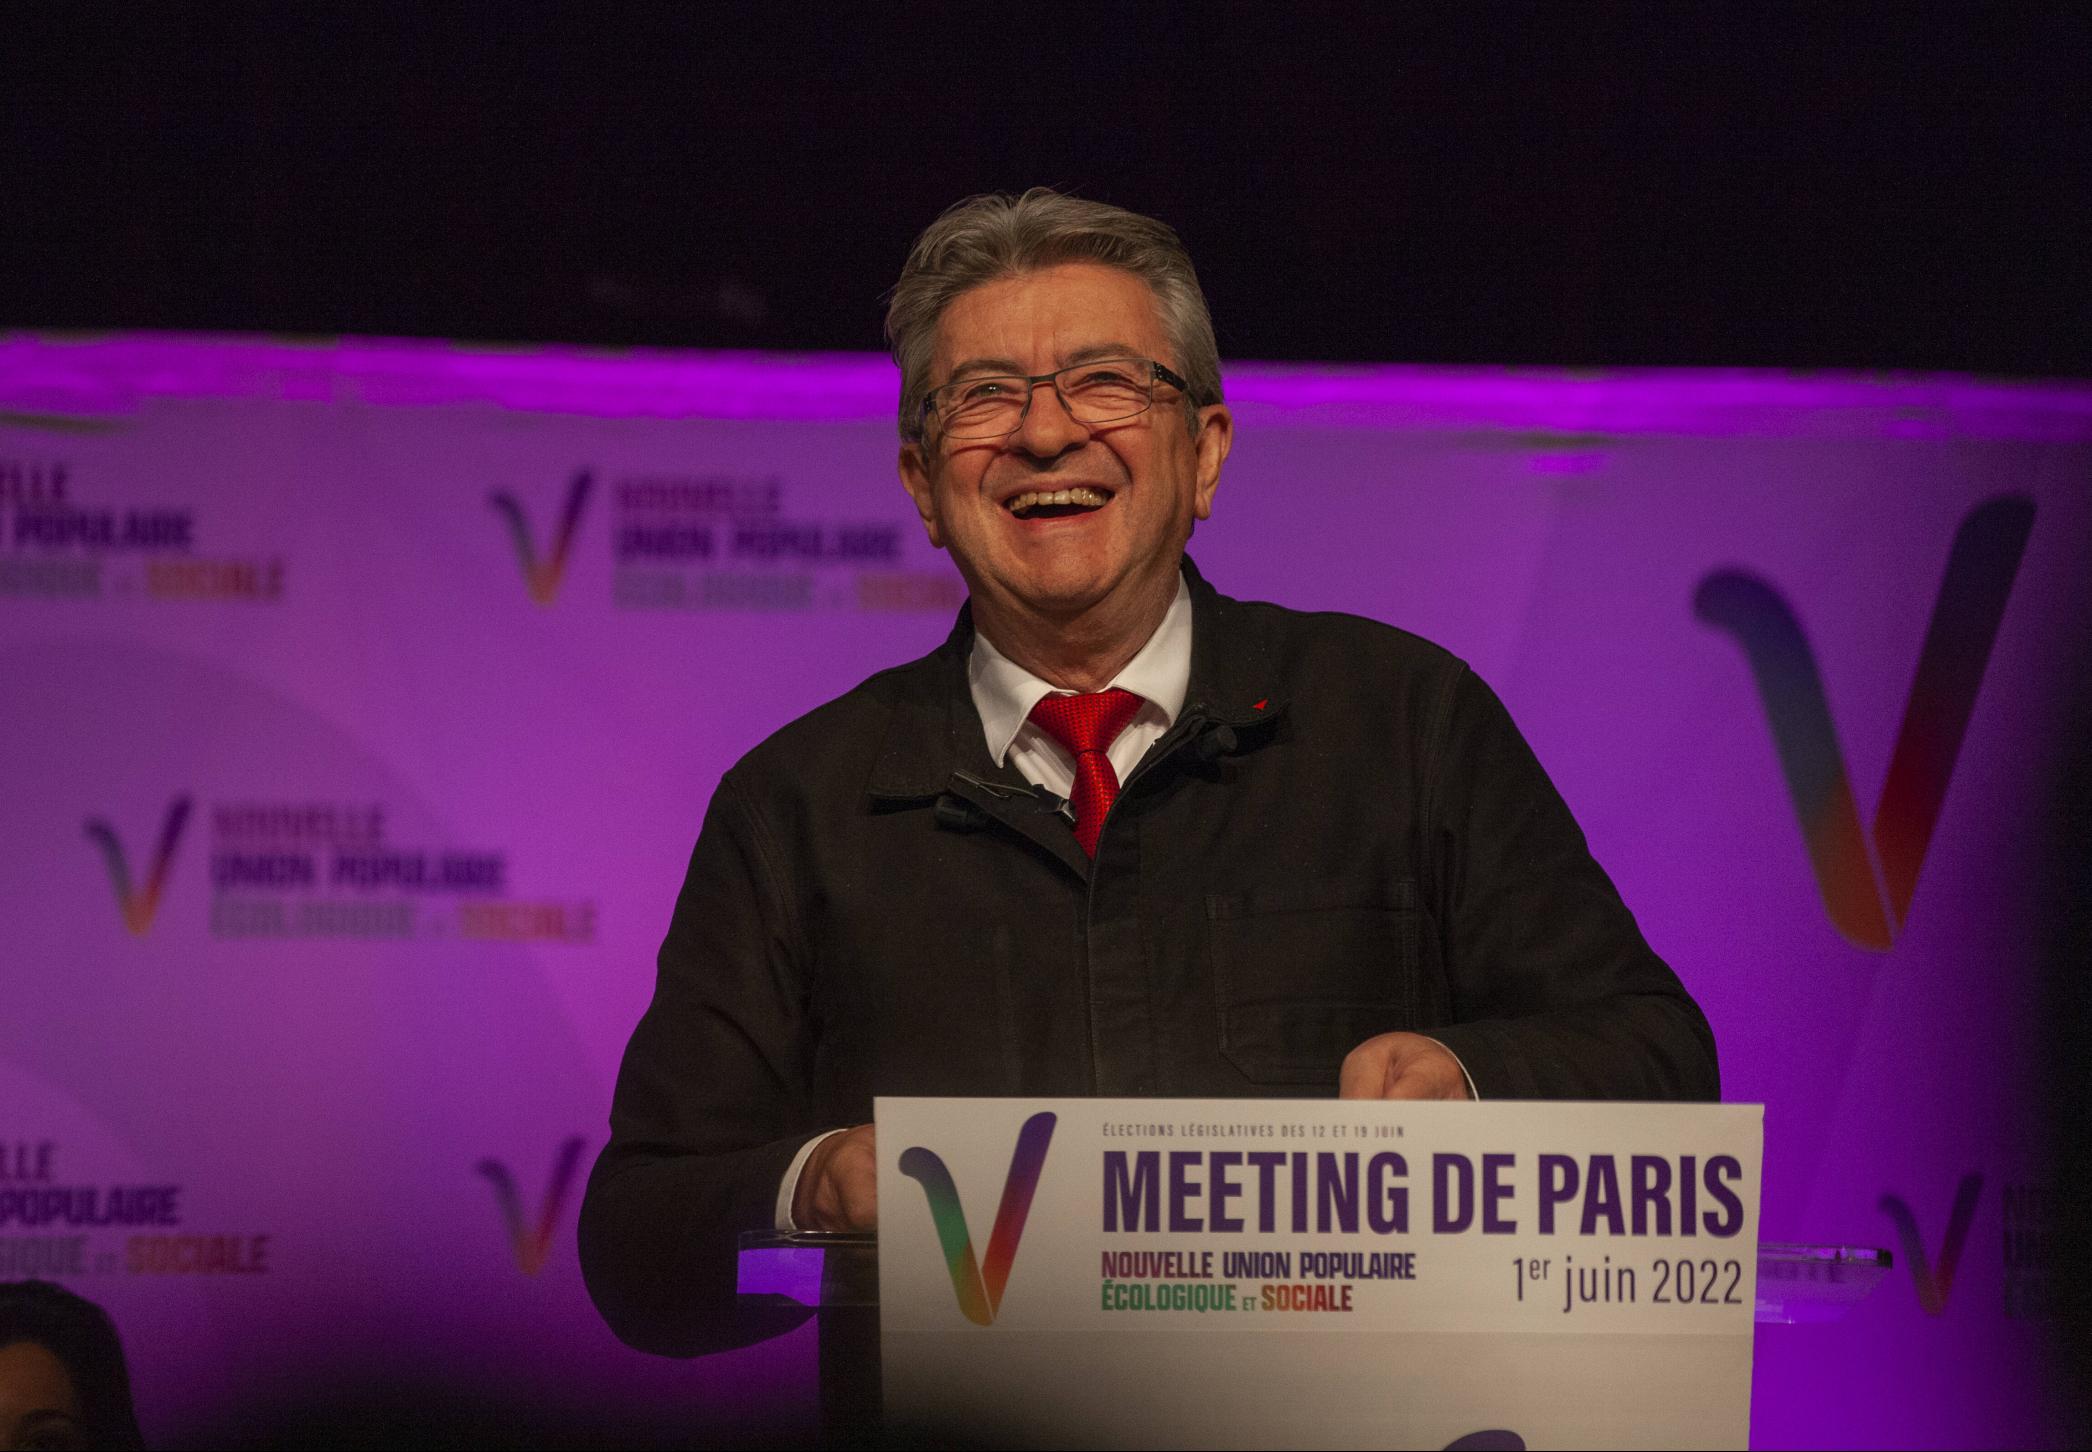 Jean-Luc Mélenchon bei einer Rede vor der NUPES, Paris, 1 Juni. 2022.